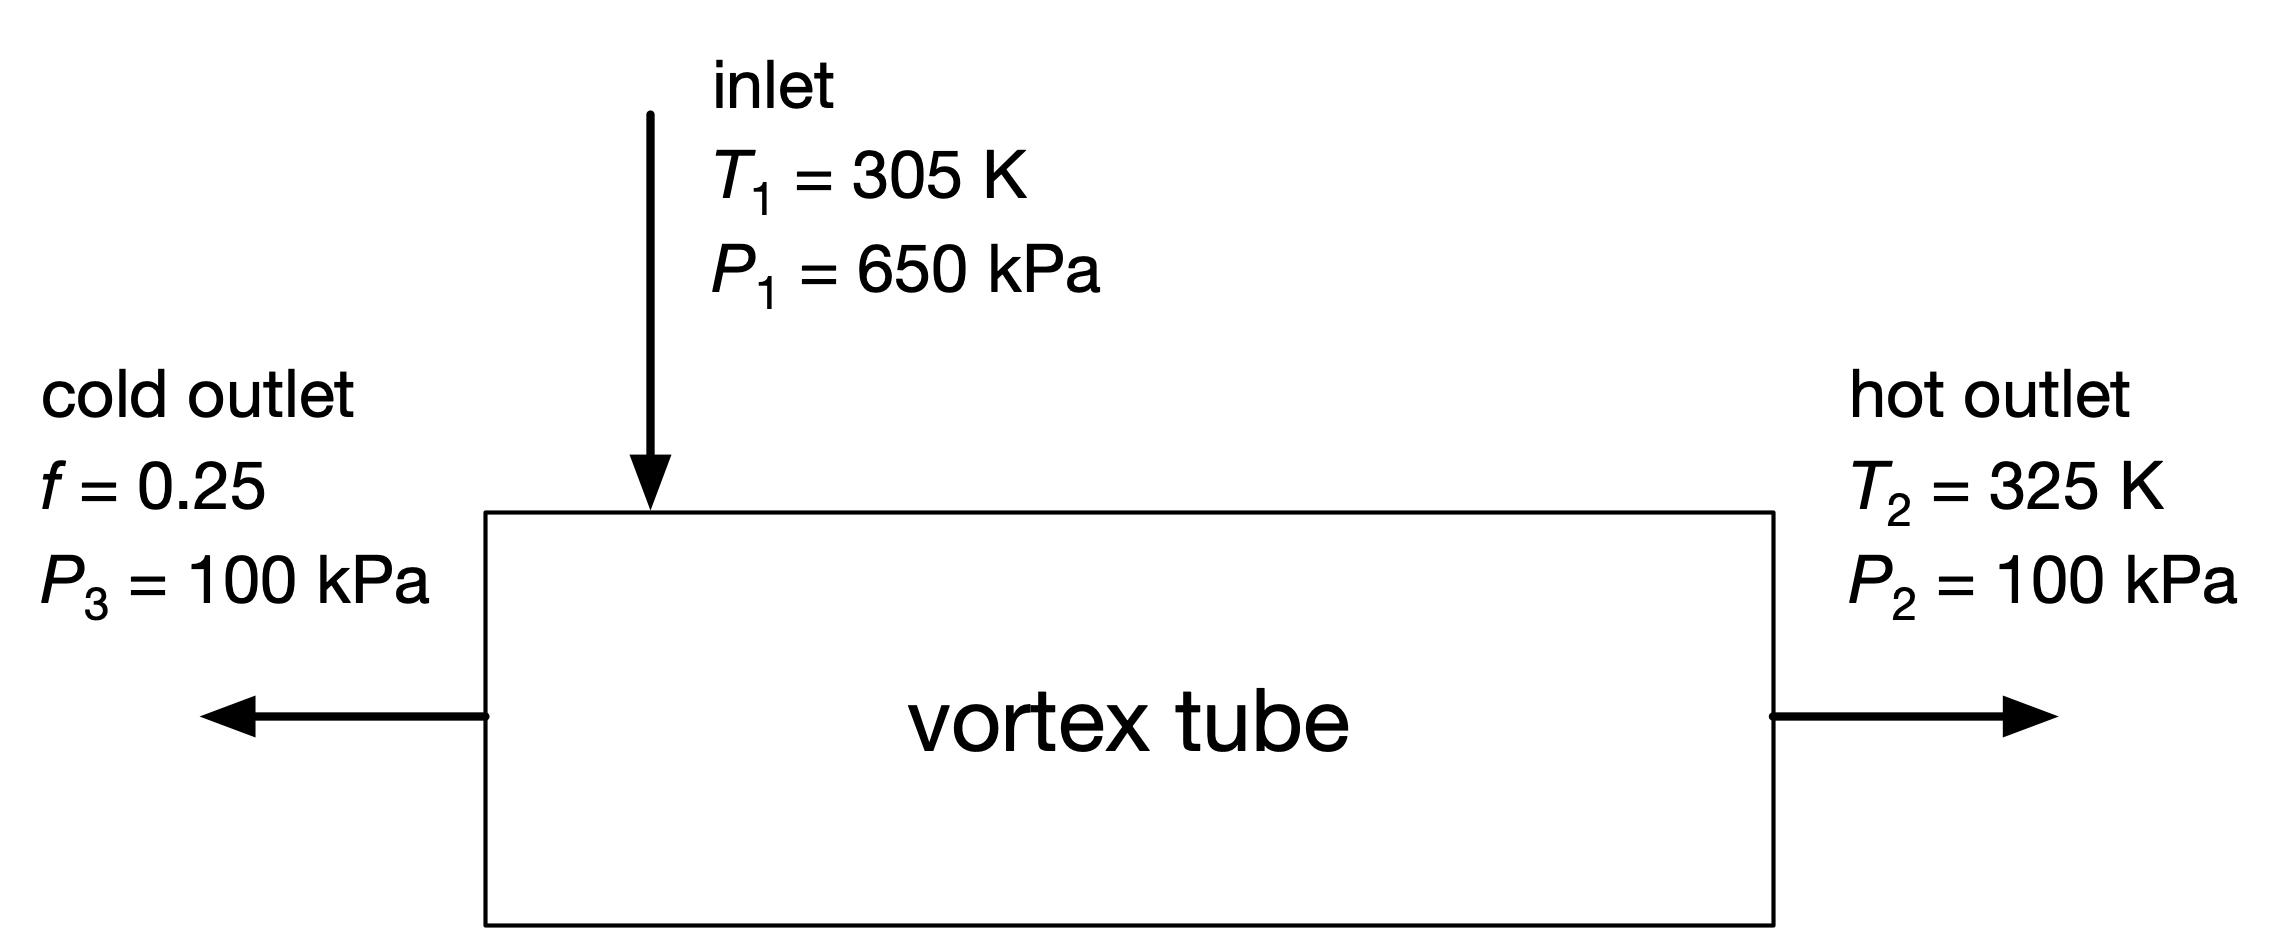 Vortex tube